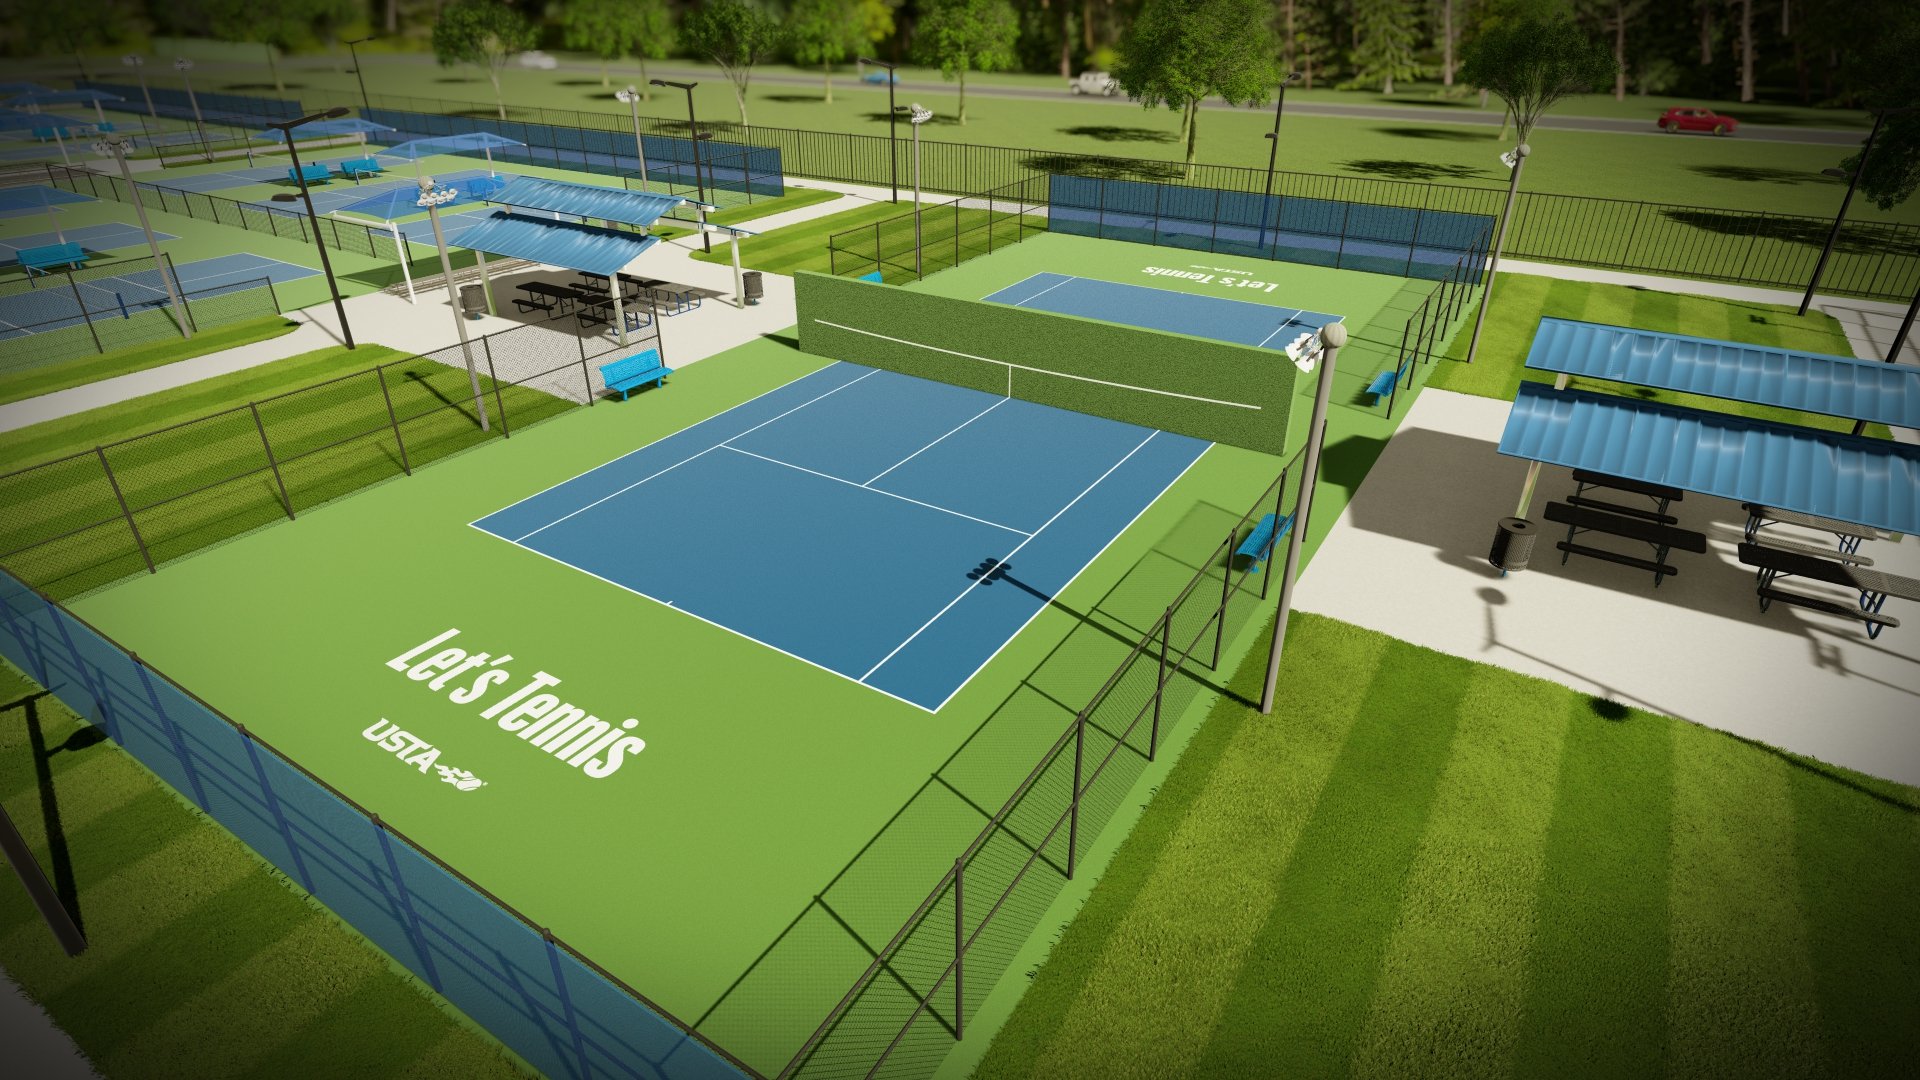 3d rendering of tennis court